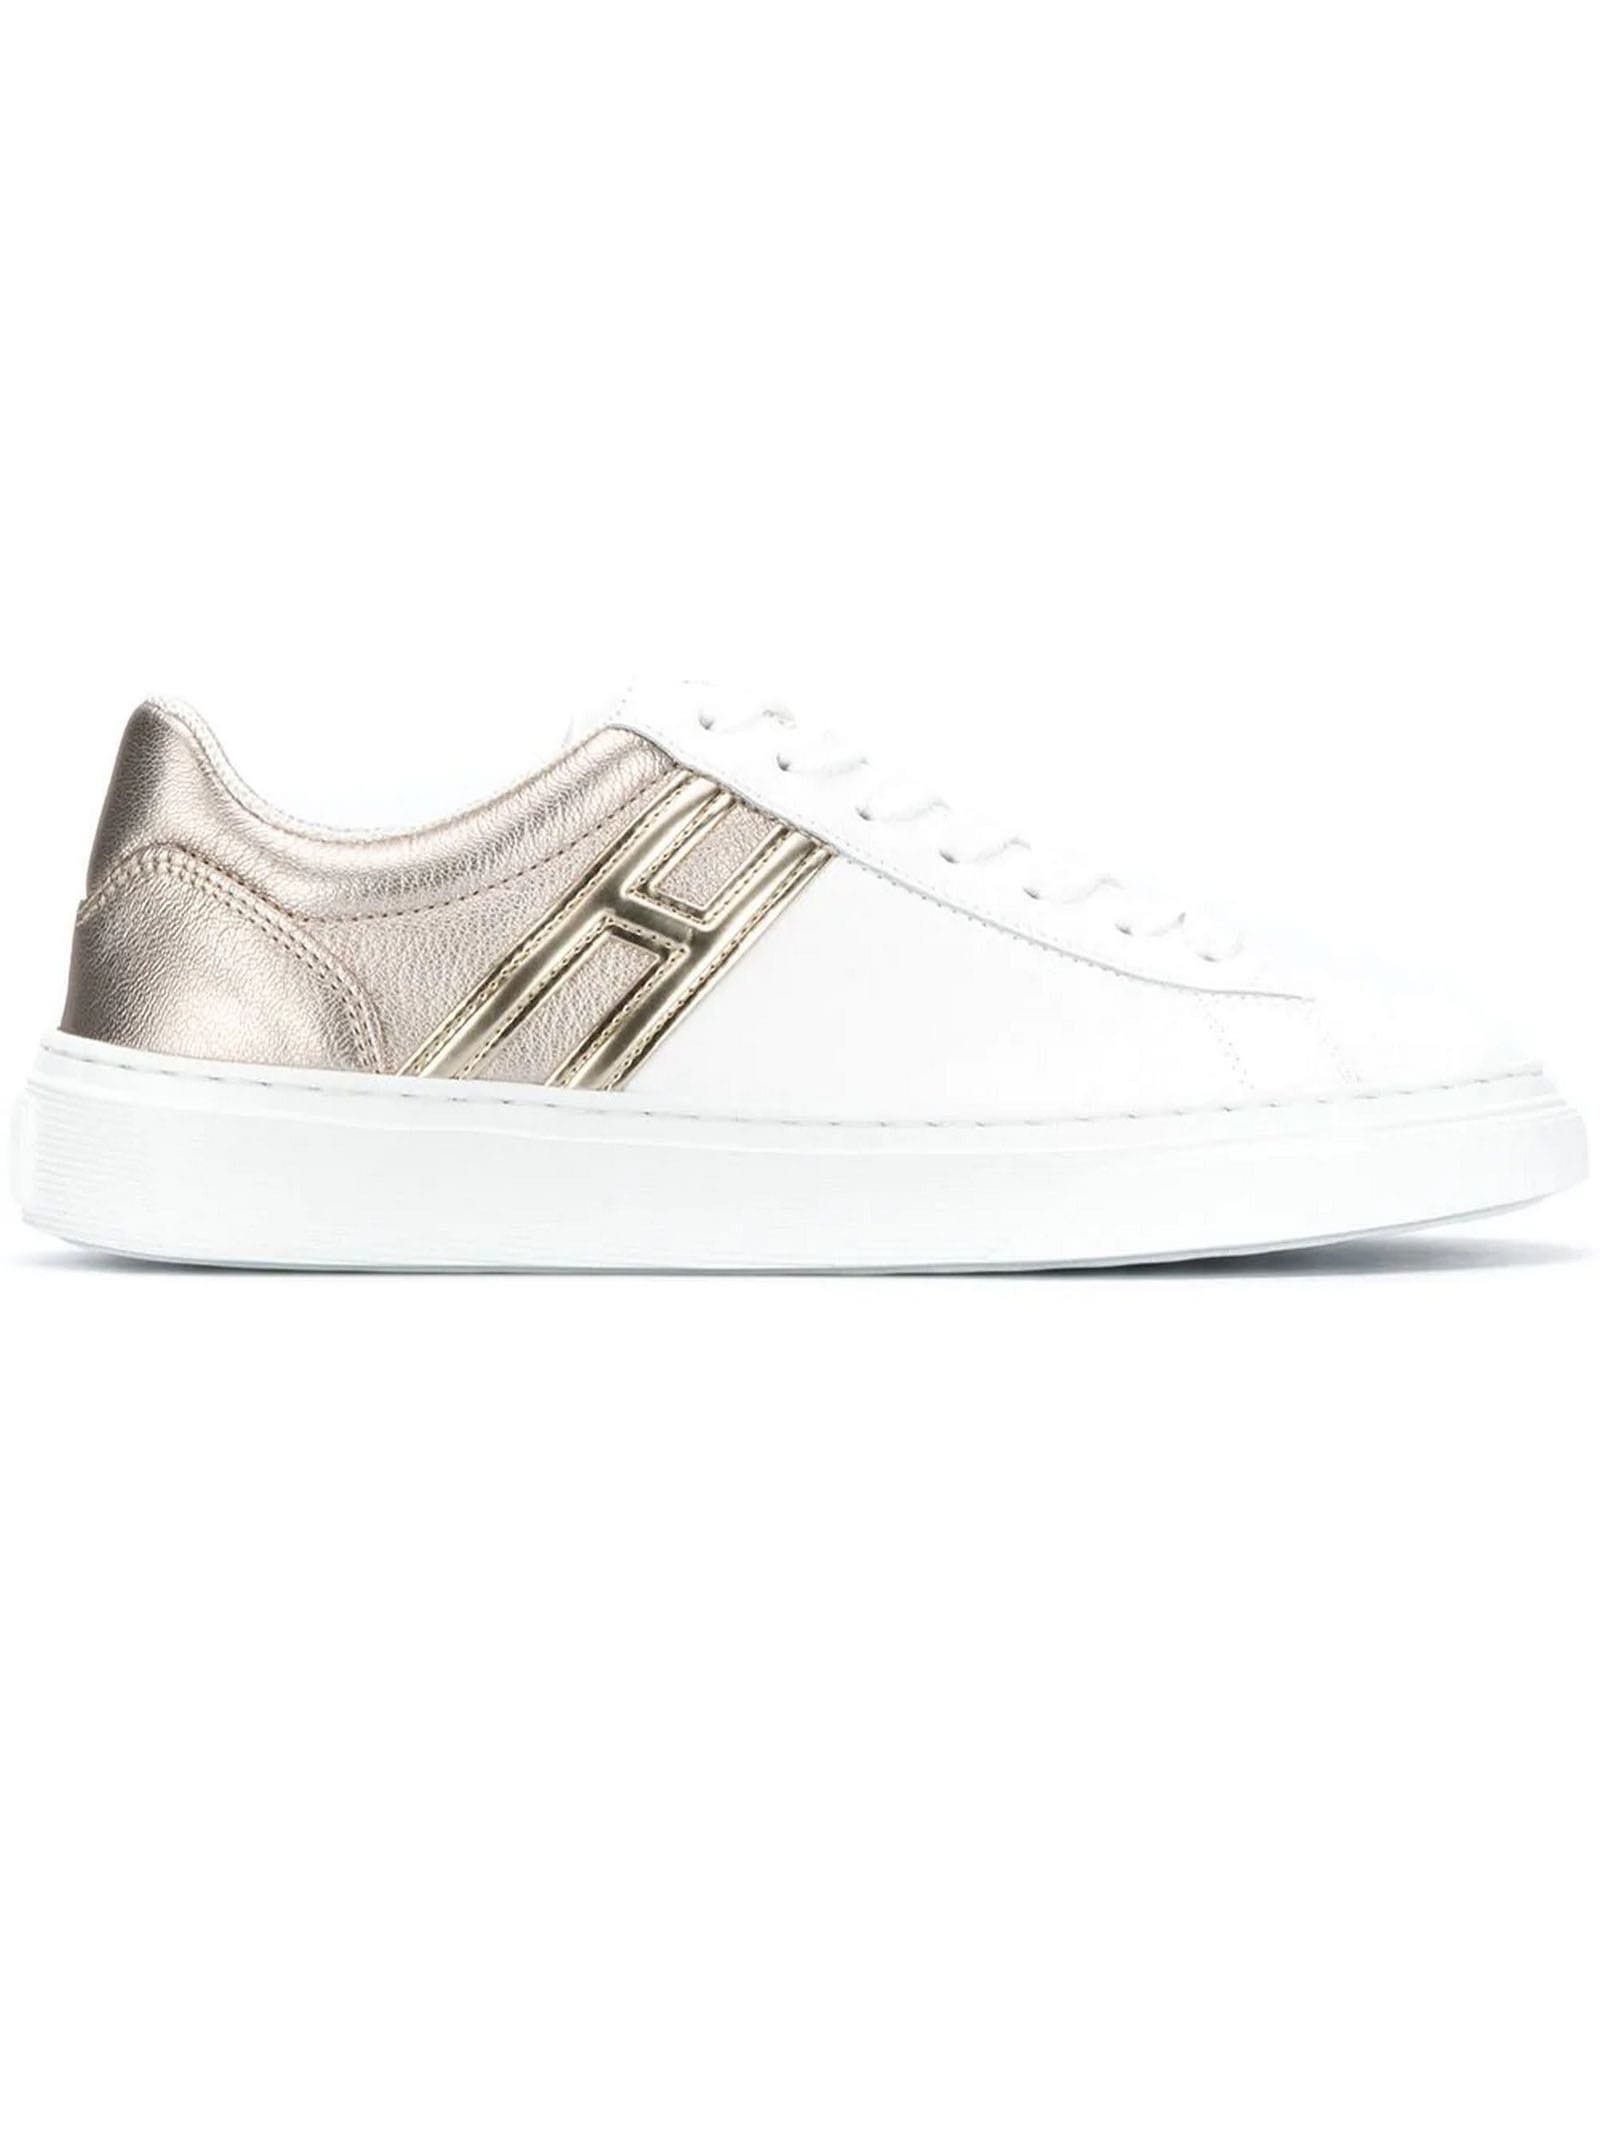 Hogan Sneakers H365 White, Silver